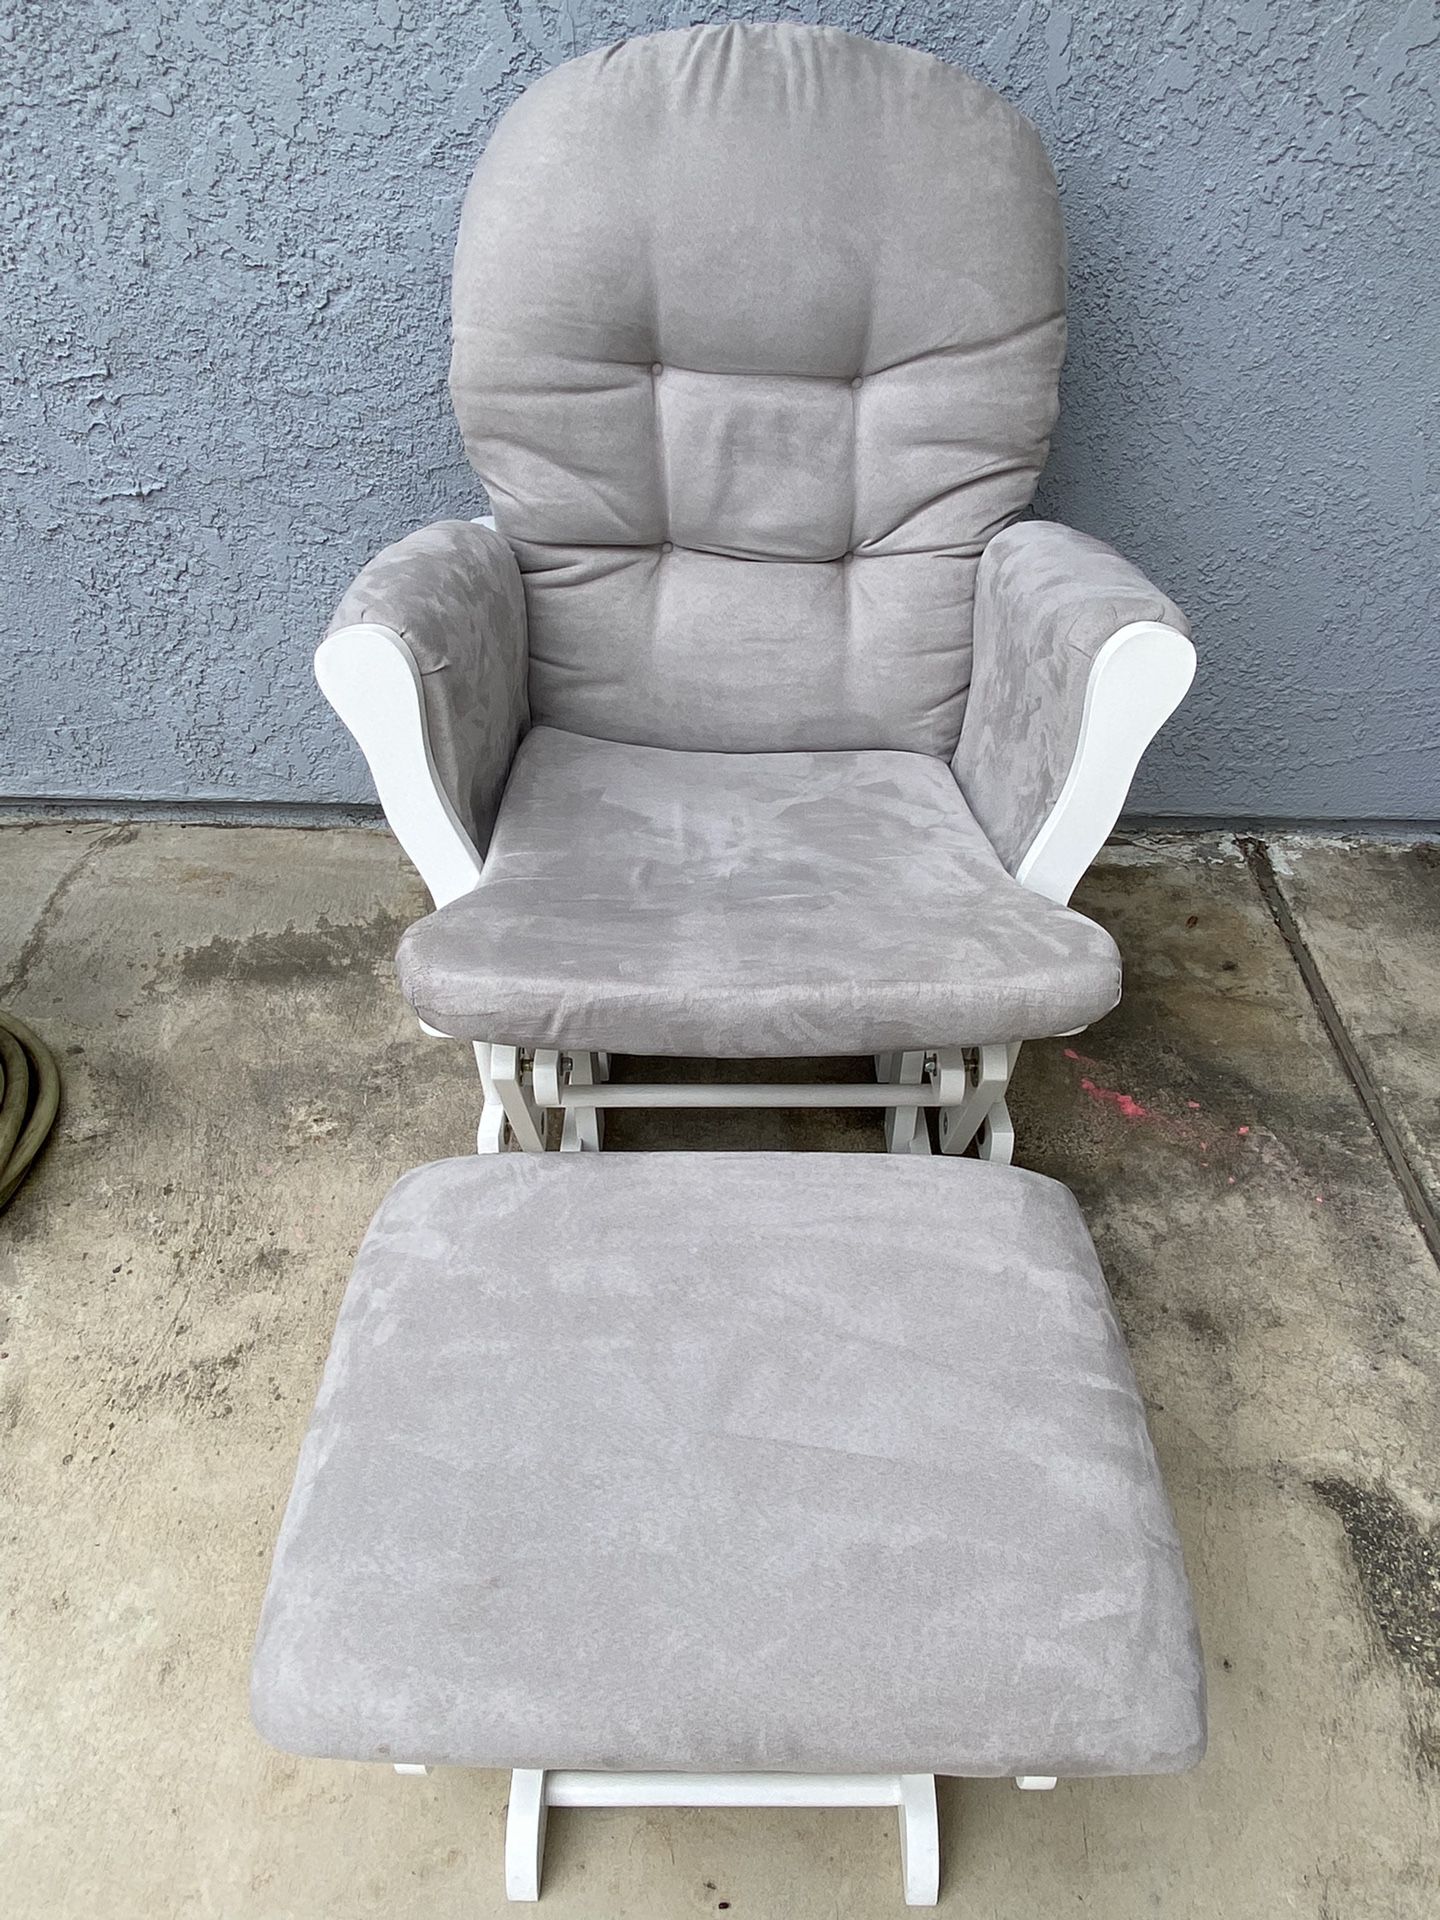 Rocker Chair / Glider Set 